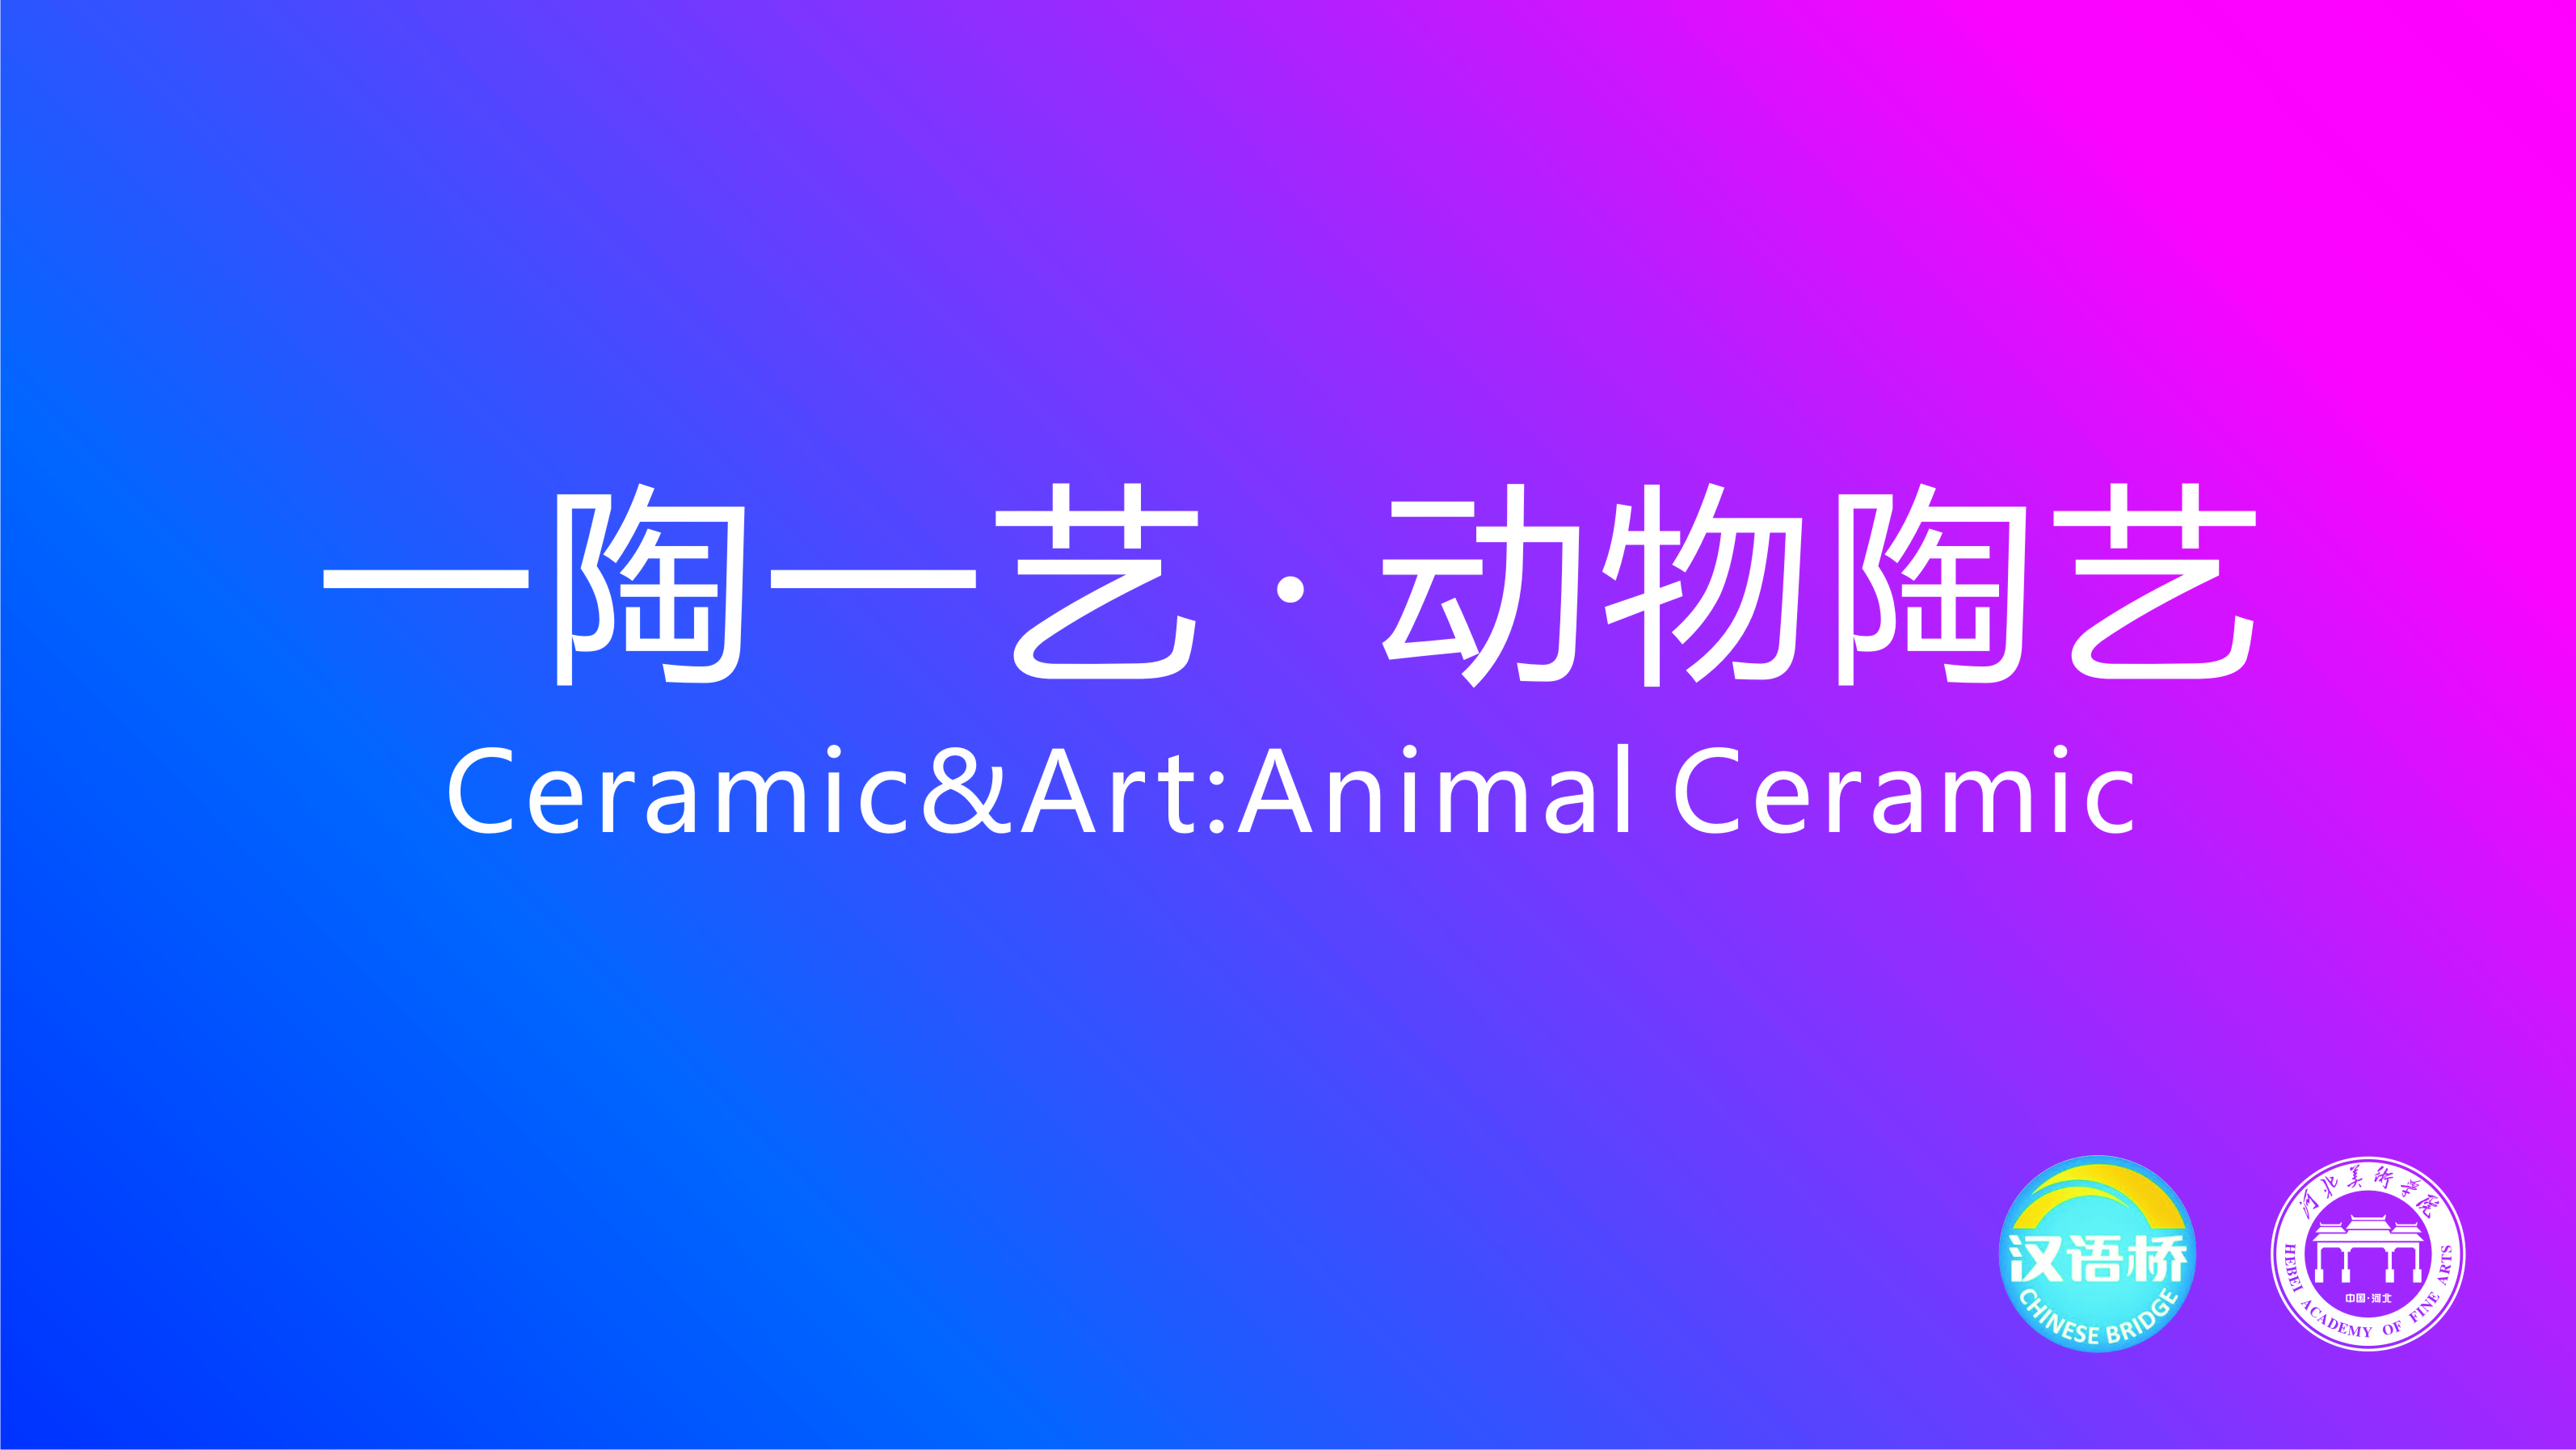 Seal Ceramic&Art:Animal Ceramic